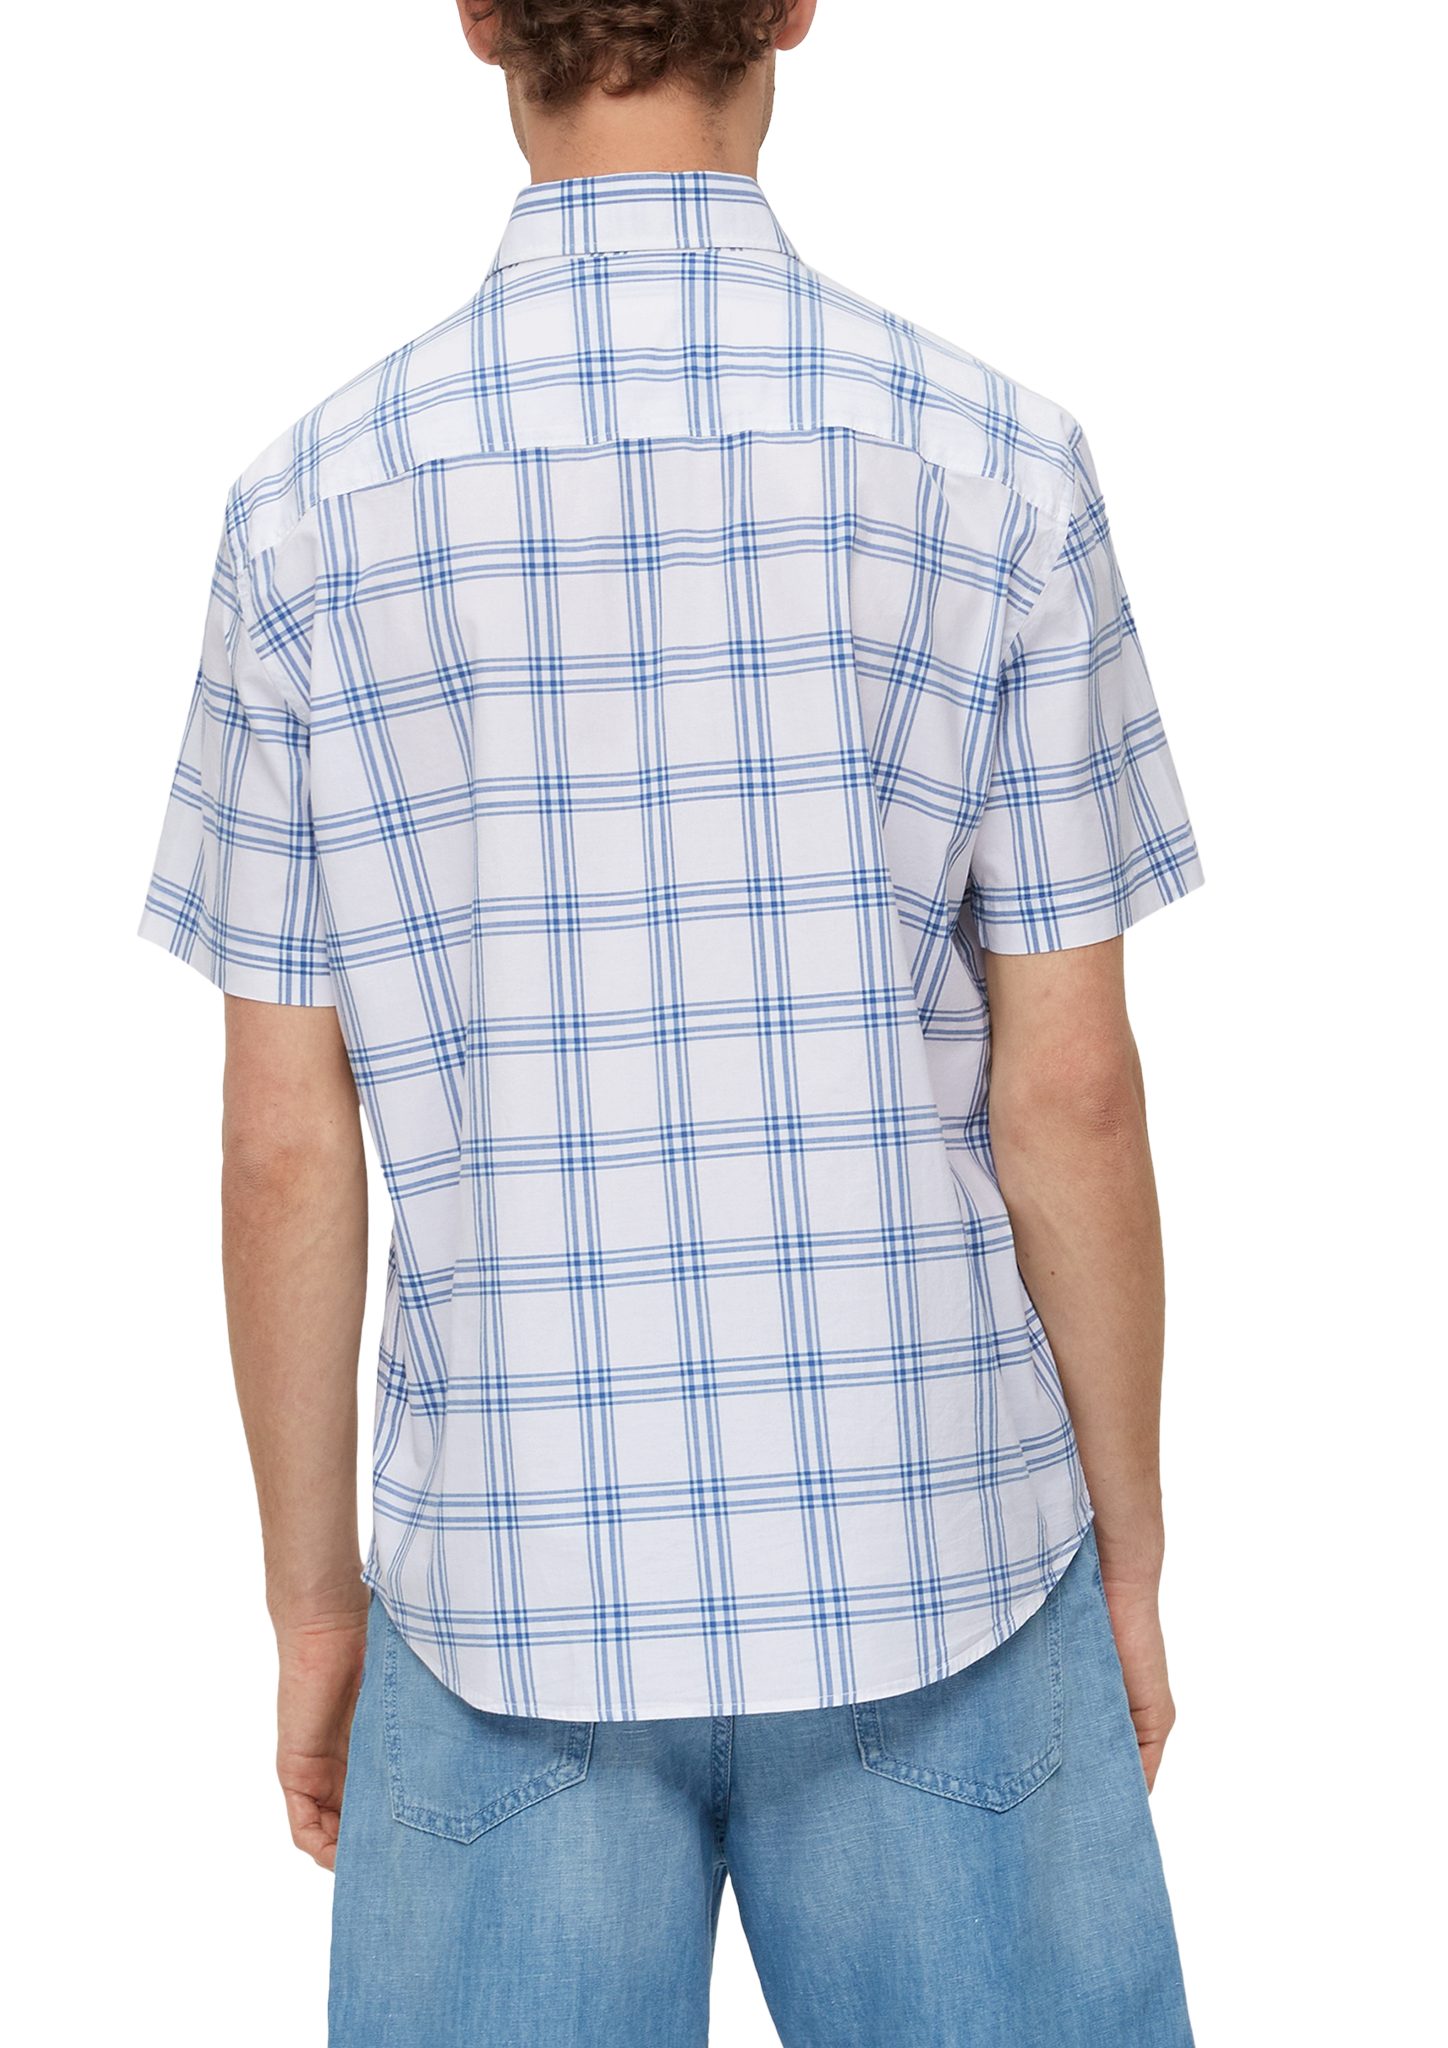 s.Oliver aus Regular: Baumwollstretch Kariertes Kurzarmhemd Hemd hellblau